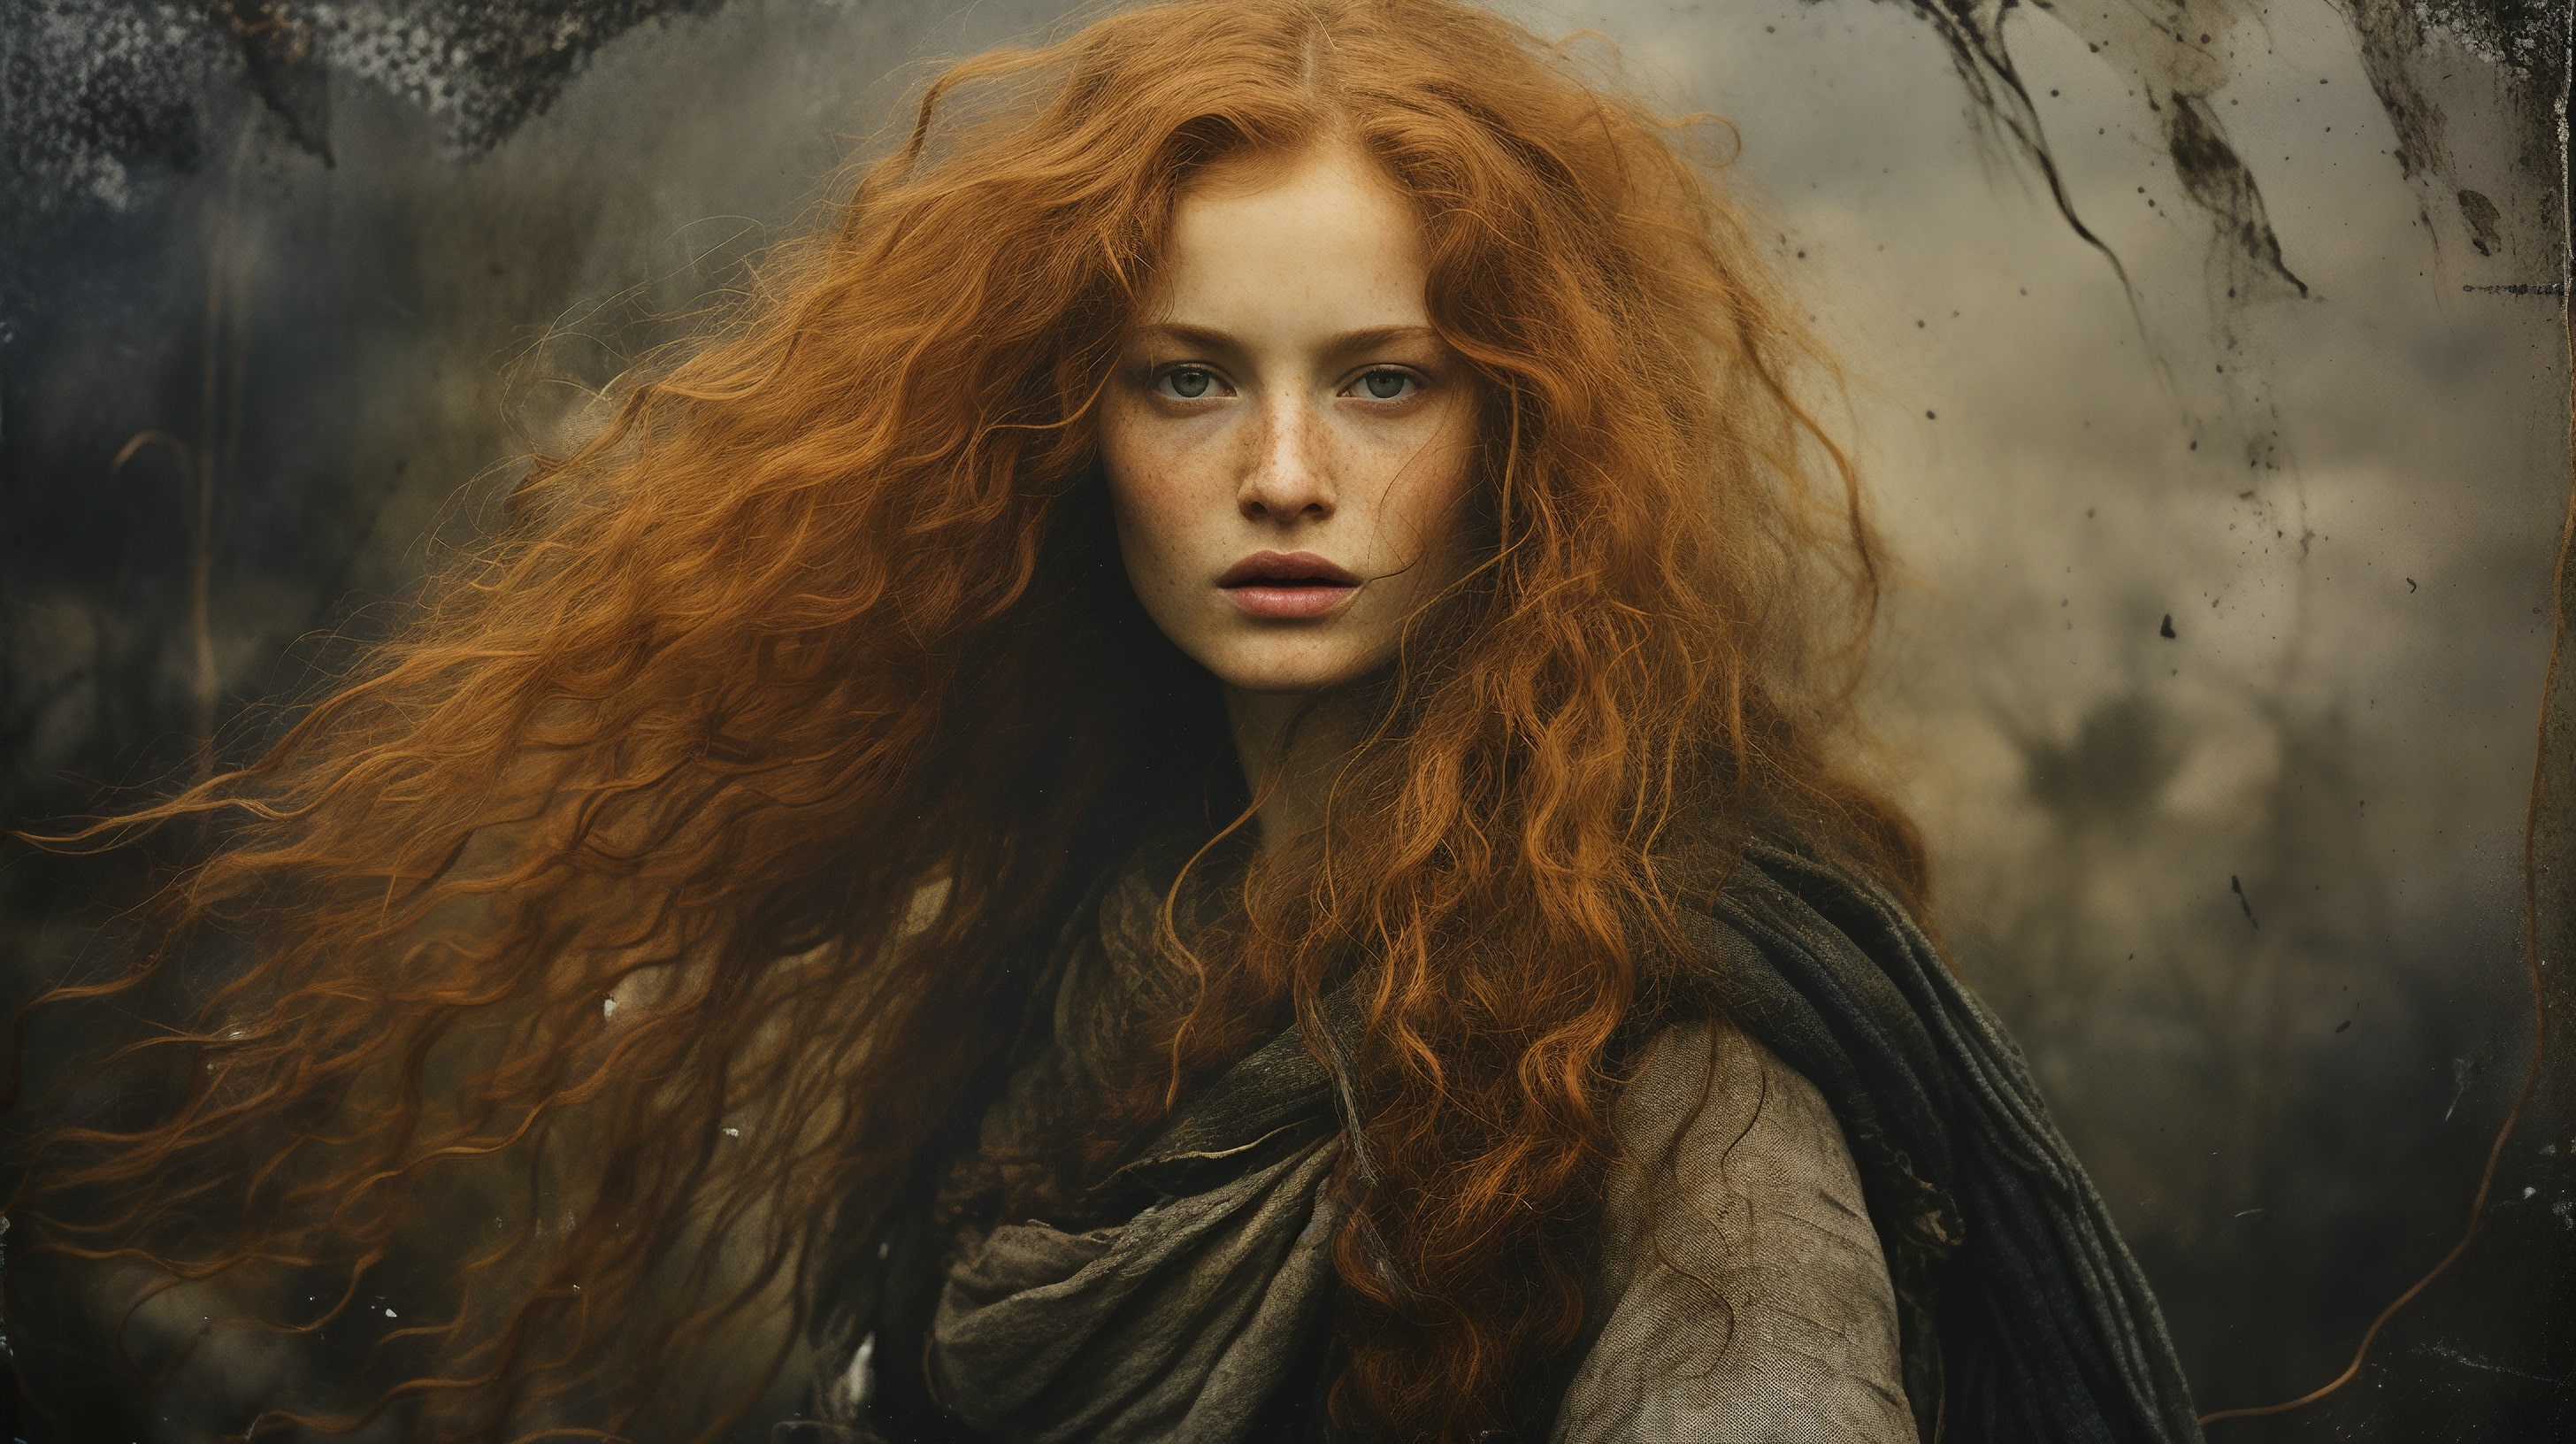 Красивый фотопортрет рыжеволосой девушки в средневековом наряде